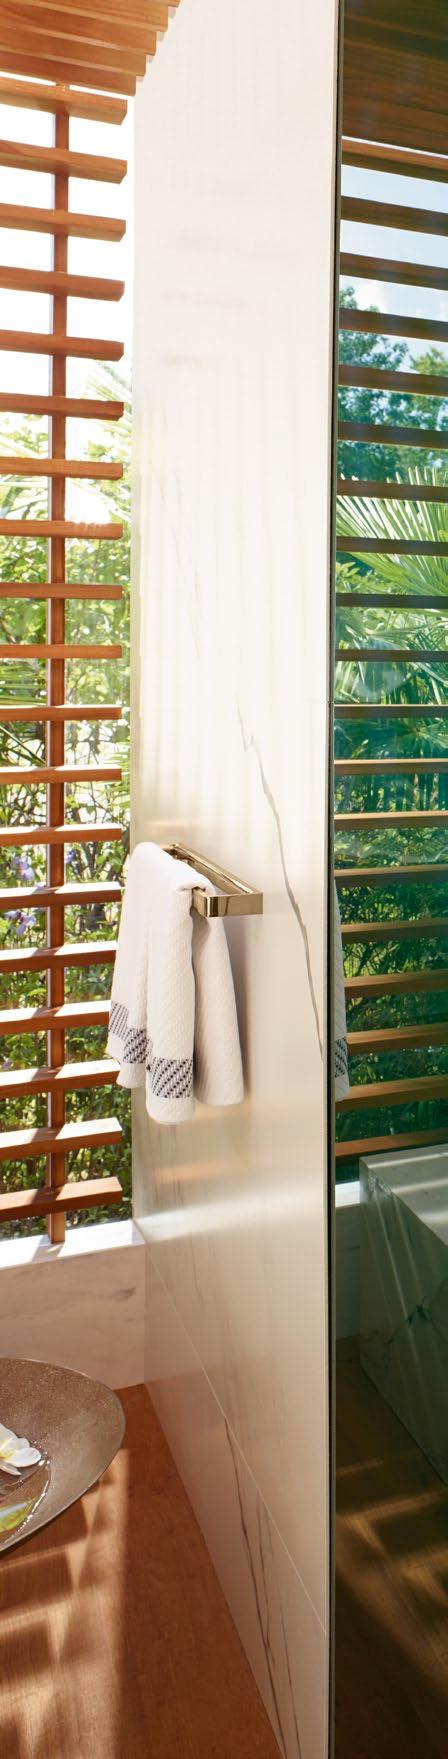 Kategoriler 142 Axor ShowerSelect Küçük bir Buton büyük bir fark yaratıyor ve duşu daha basit ve konforlu hale getiriyor. Select teknolojisi sayesinde duş artık bir butona basarak çalıştırılıyor.